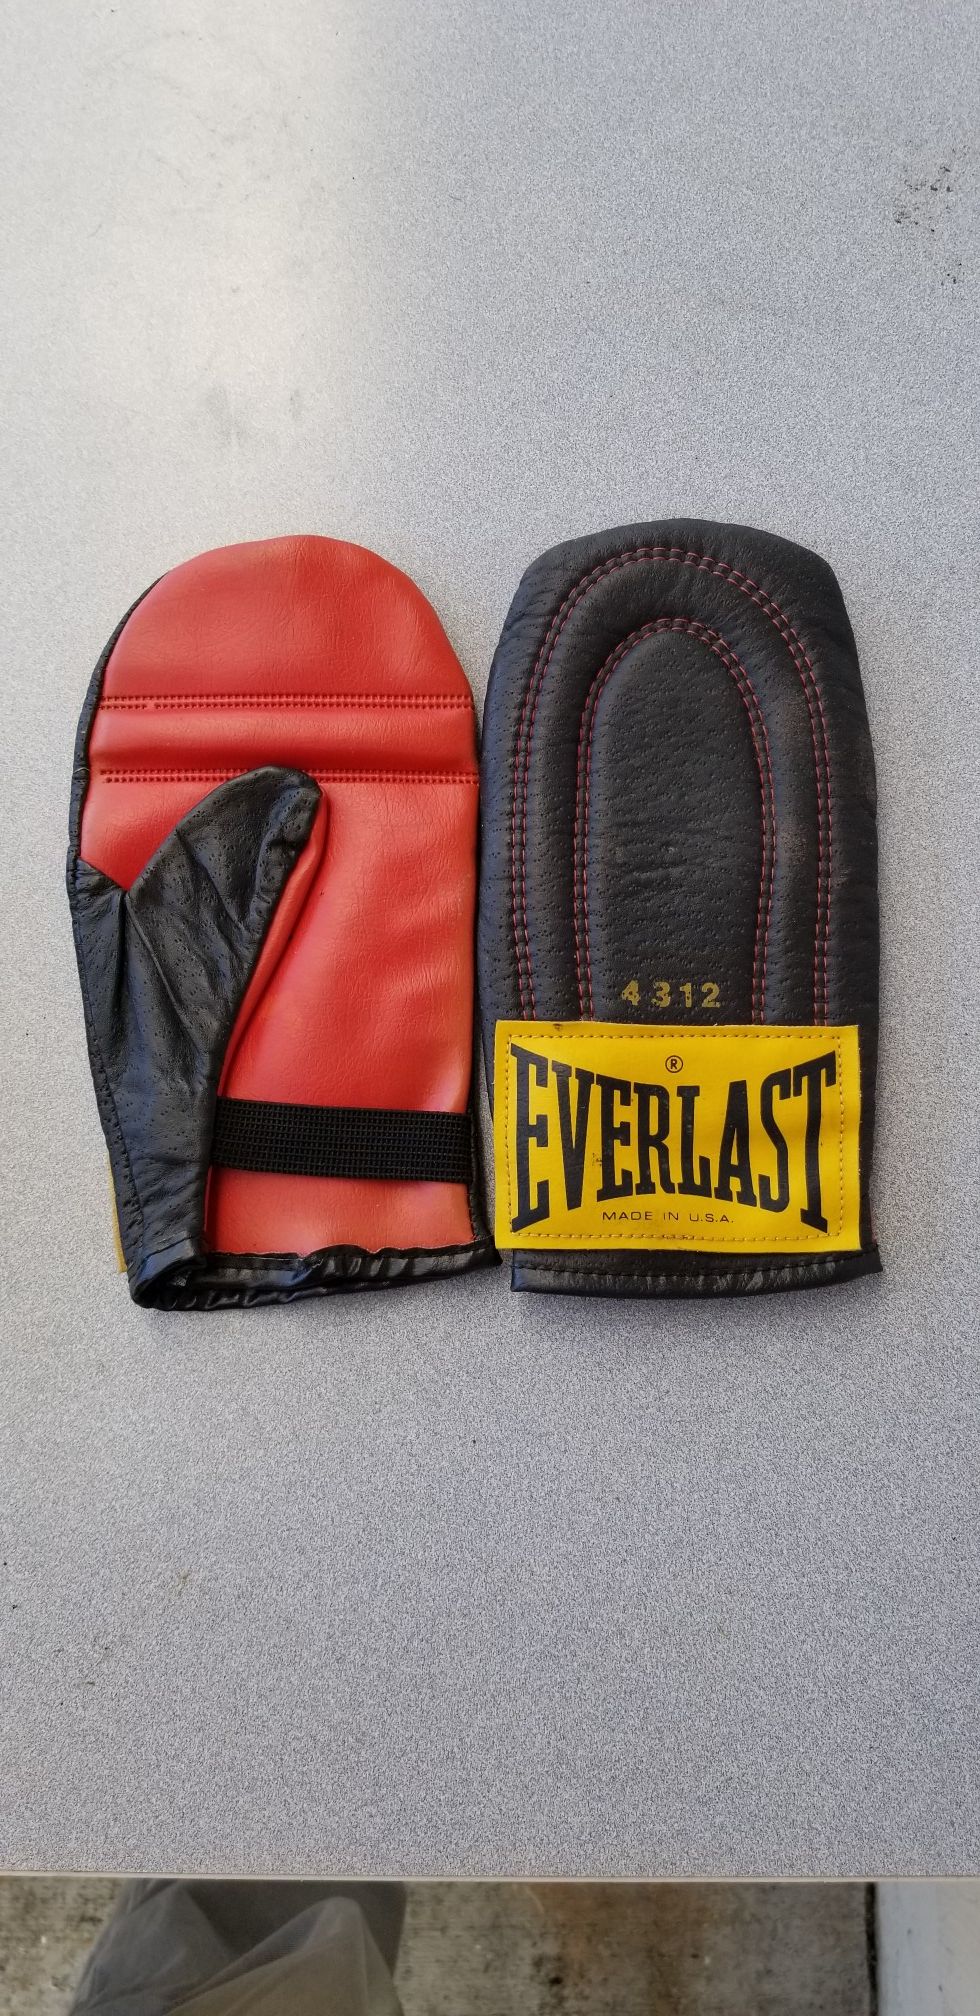 Everlast speed bag gloves